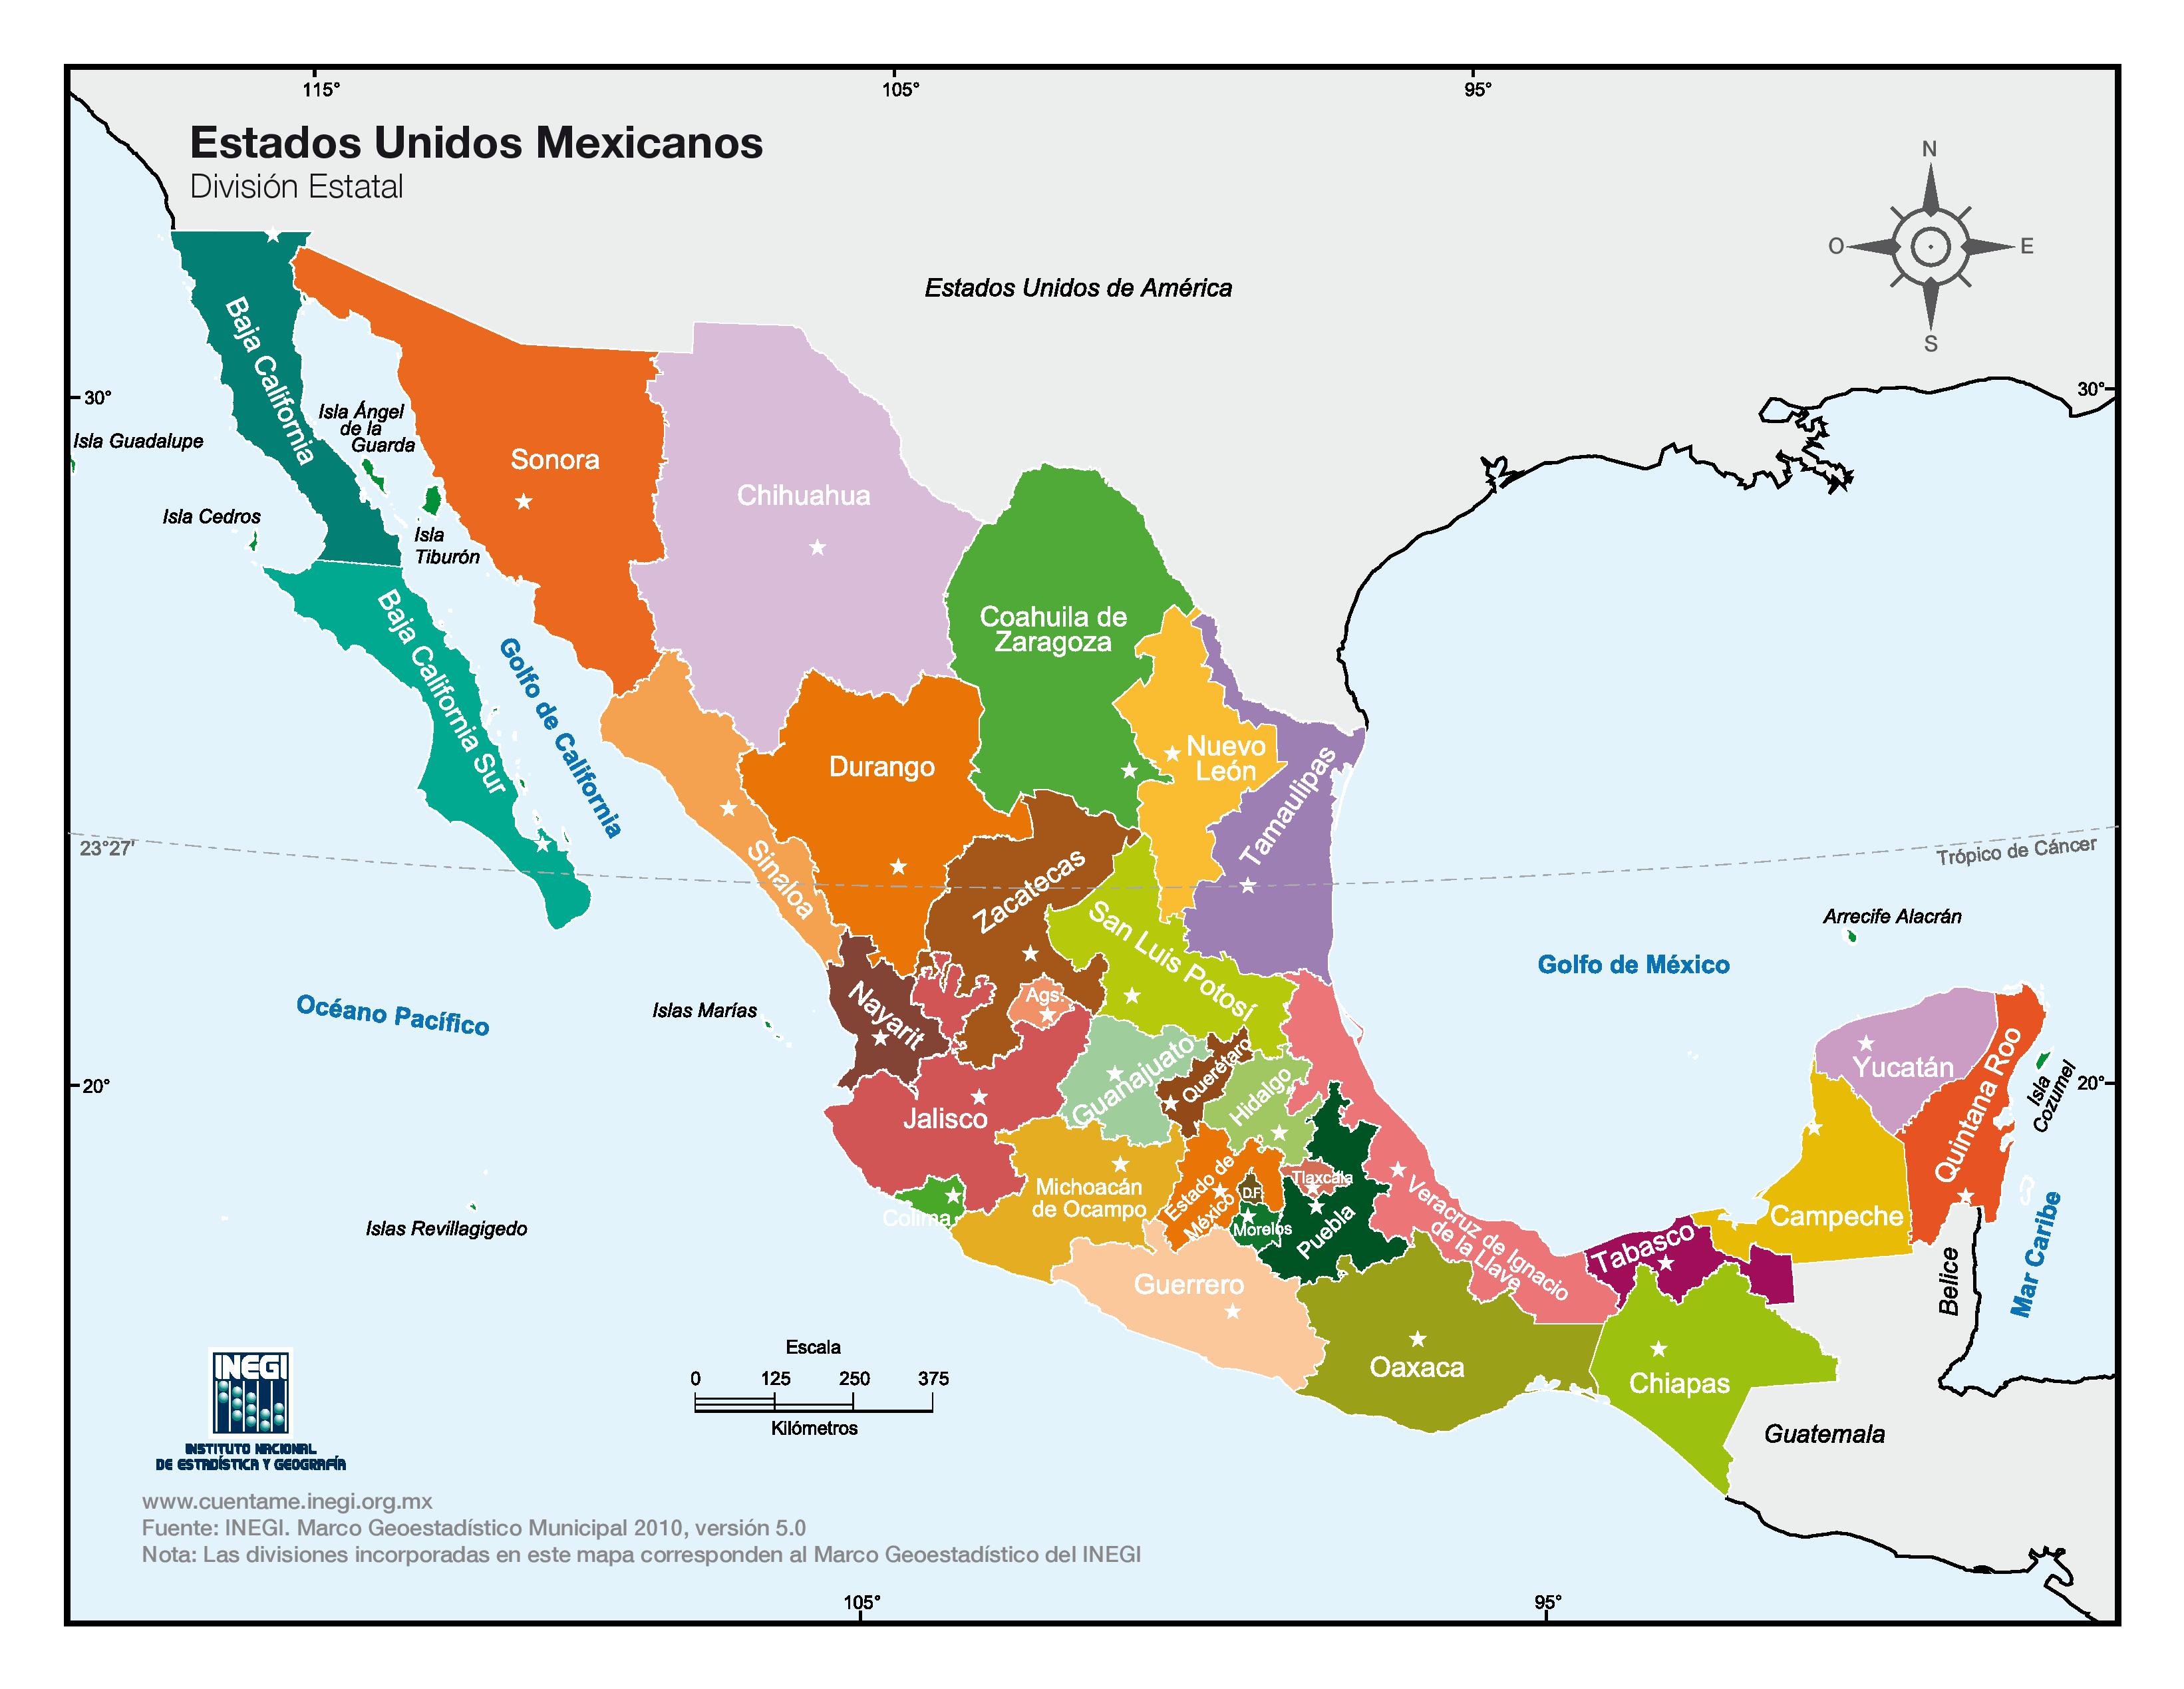 Imagenes Mapa De Mexico Y Sus Estados Con Nombres Images And Photos Finder